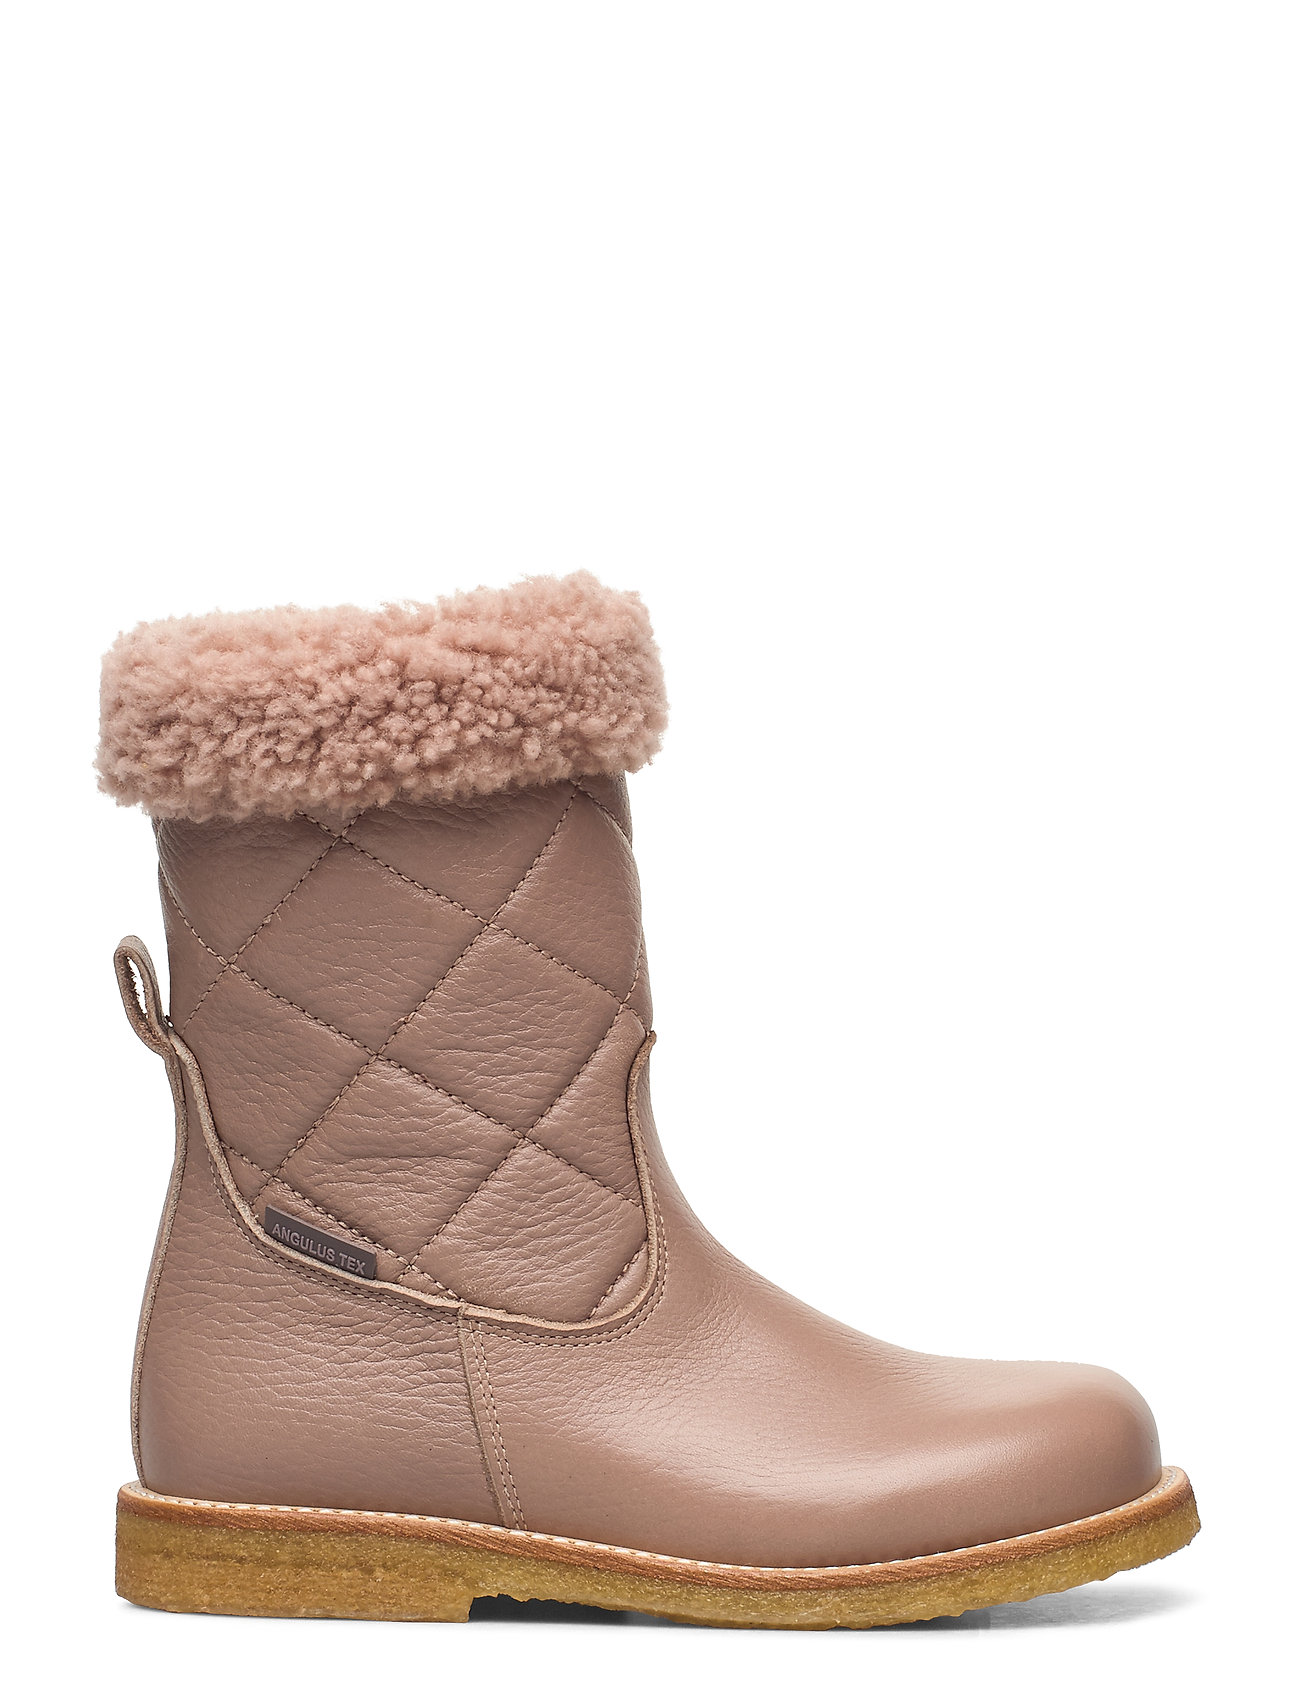 – Boots Flat With Zipper Vinterstøvler Pull On Beige ANGULUS til børn i 1538/1538/2029 MAUVE/M/LAVENDE - Pashion.dk